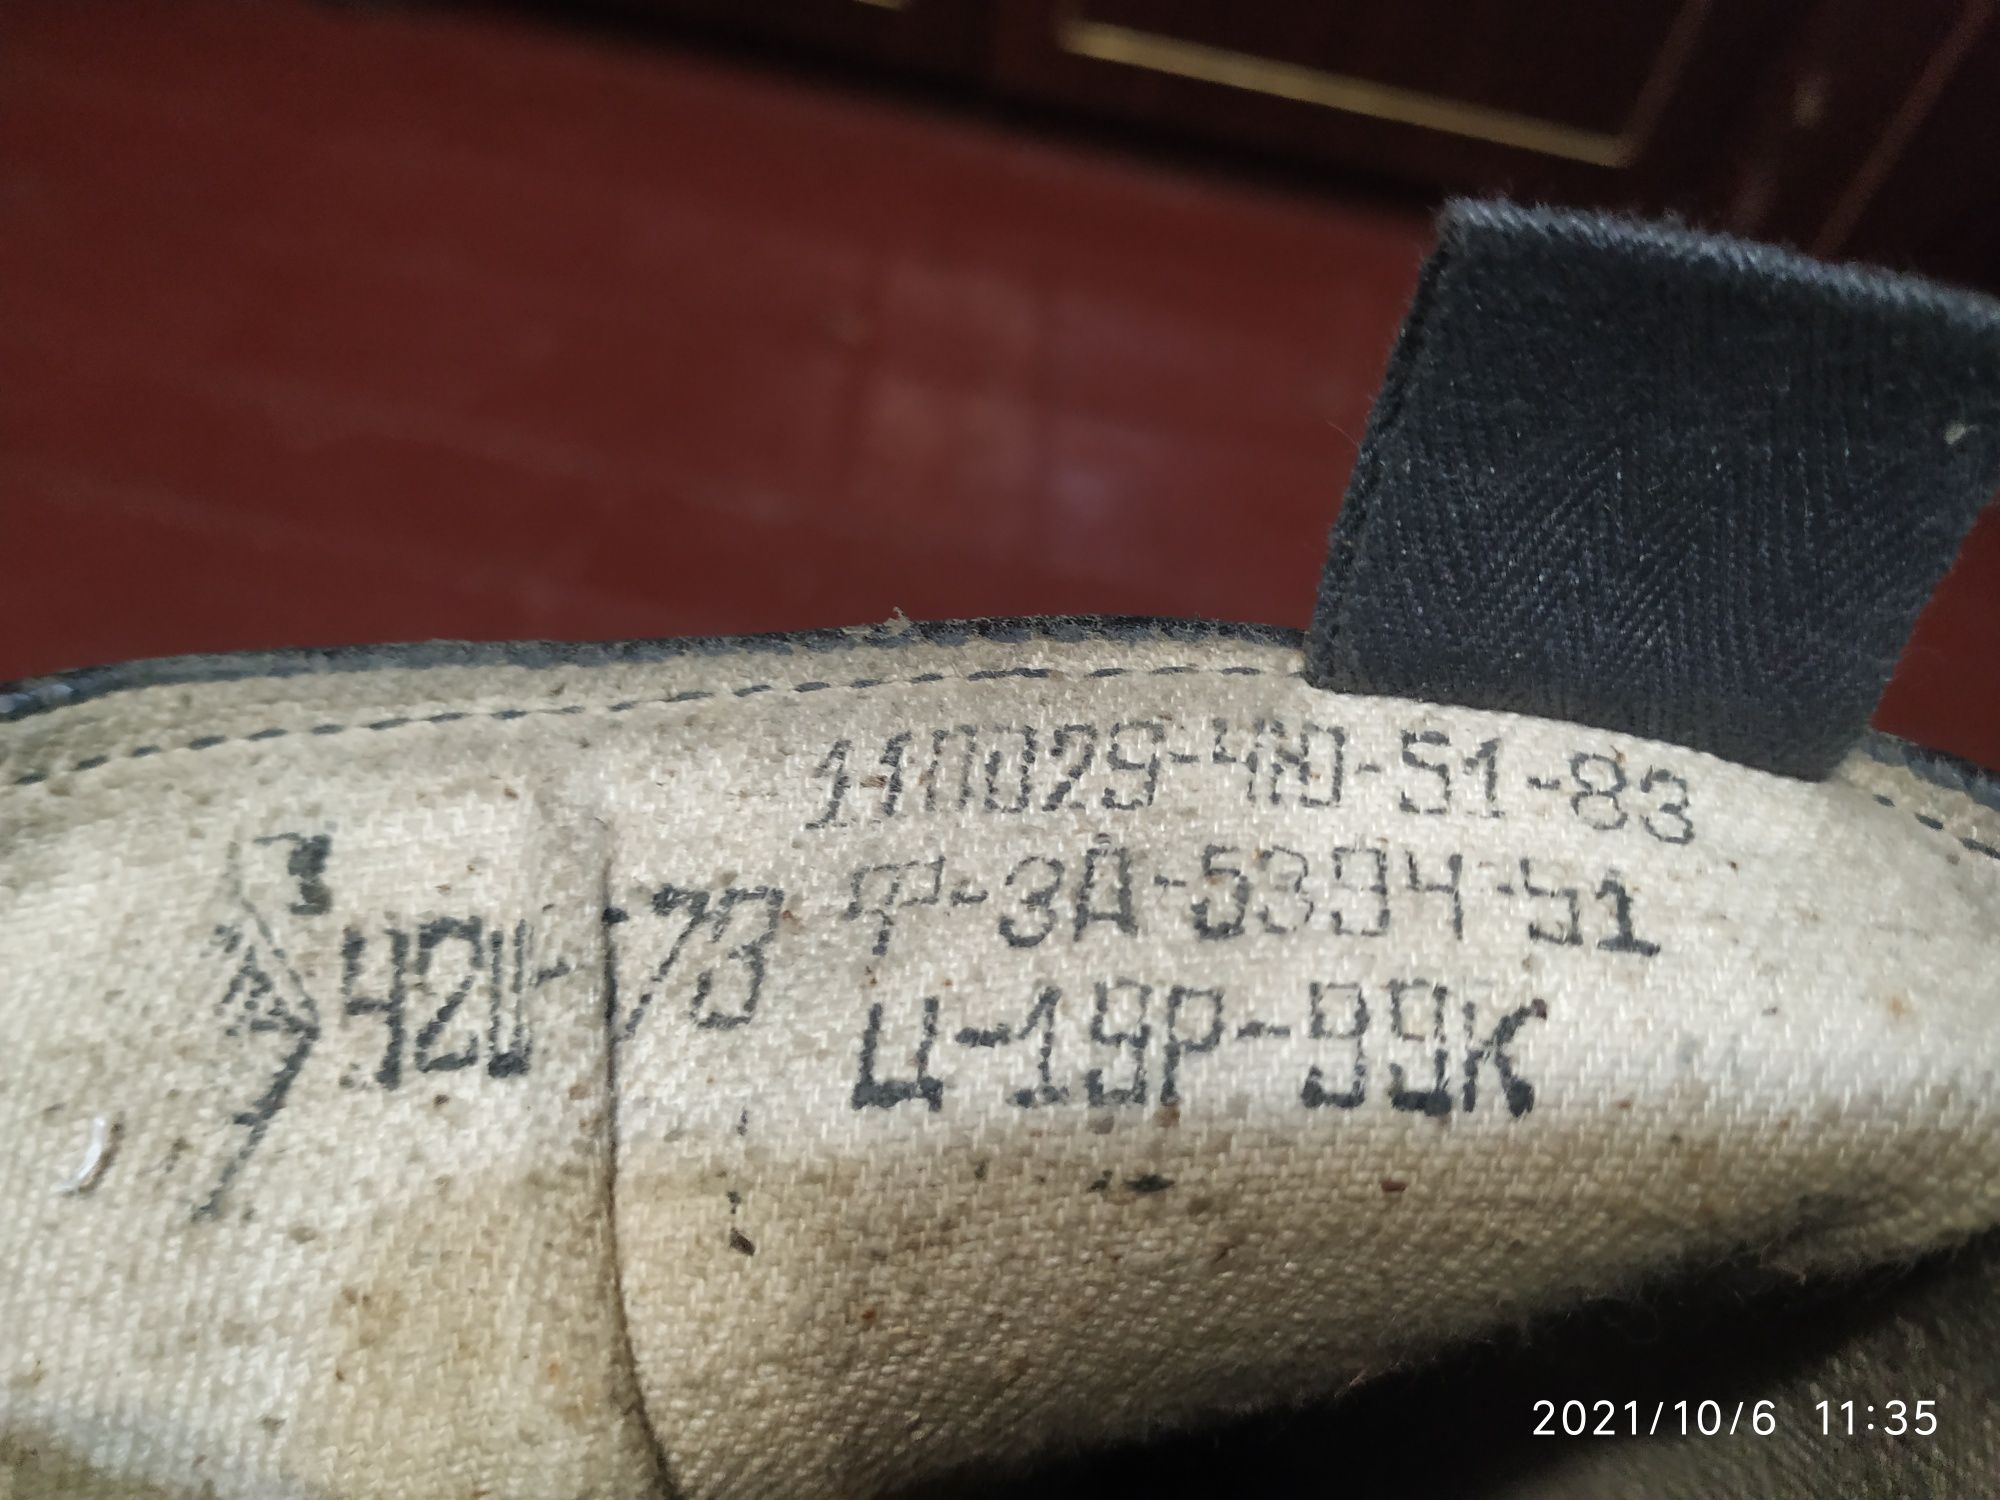 Продам кожаные сапоги времён СССР  размер 42